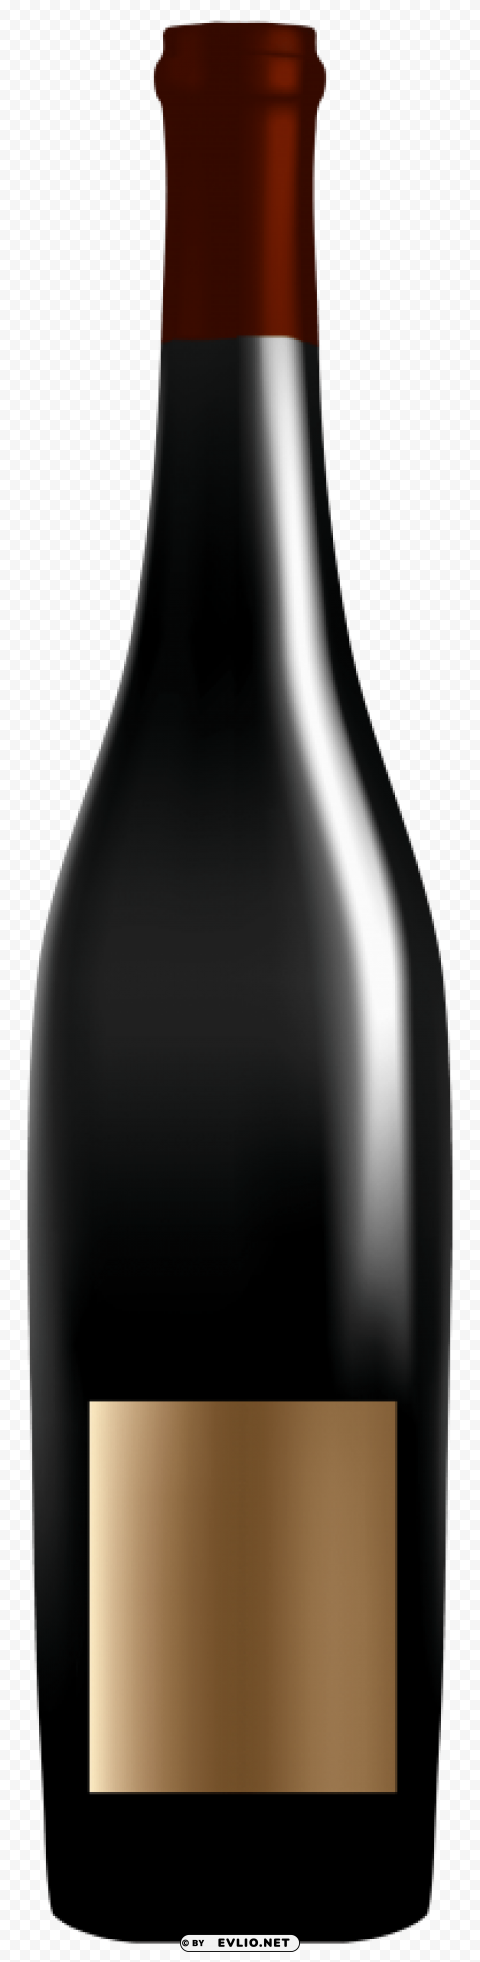 elegant wine bottle PNG images with transparent canvas comprehensive compilation